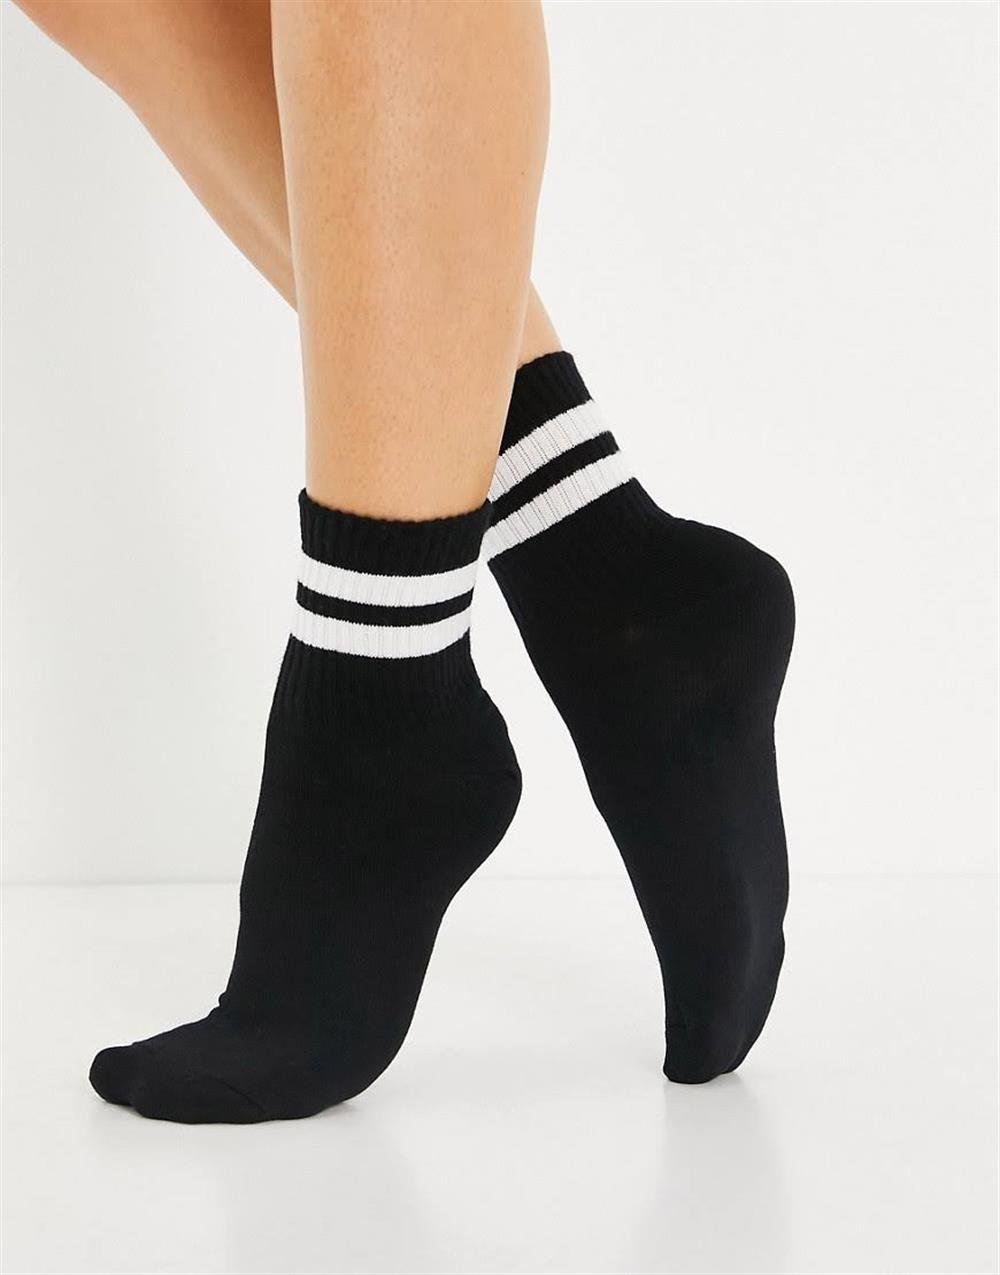 Yeni Model Yazlık Kadın Çizgili Bilek Üstü Çorap - 4 Çift